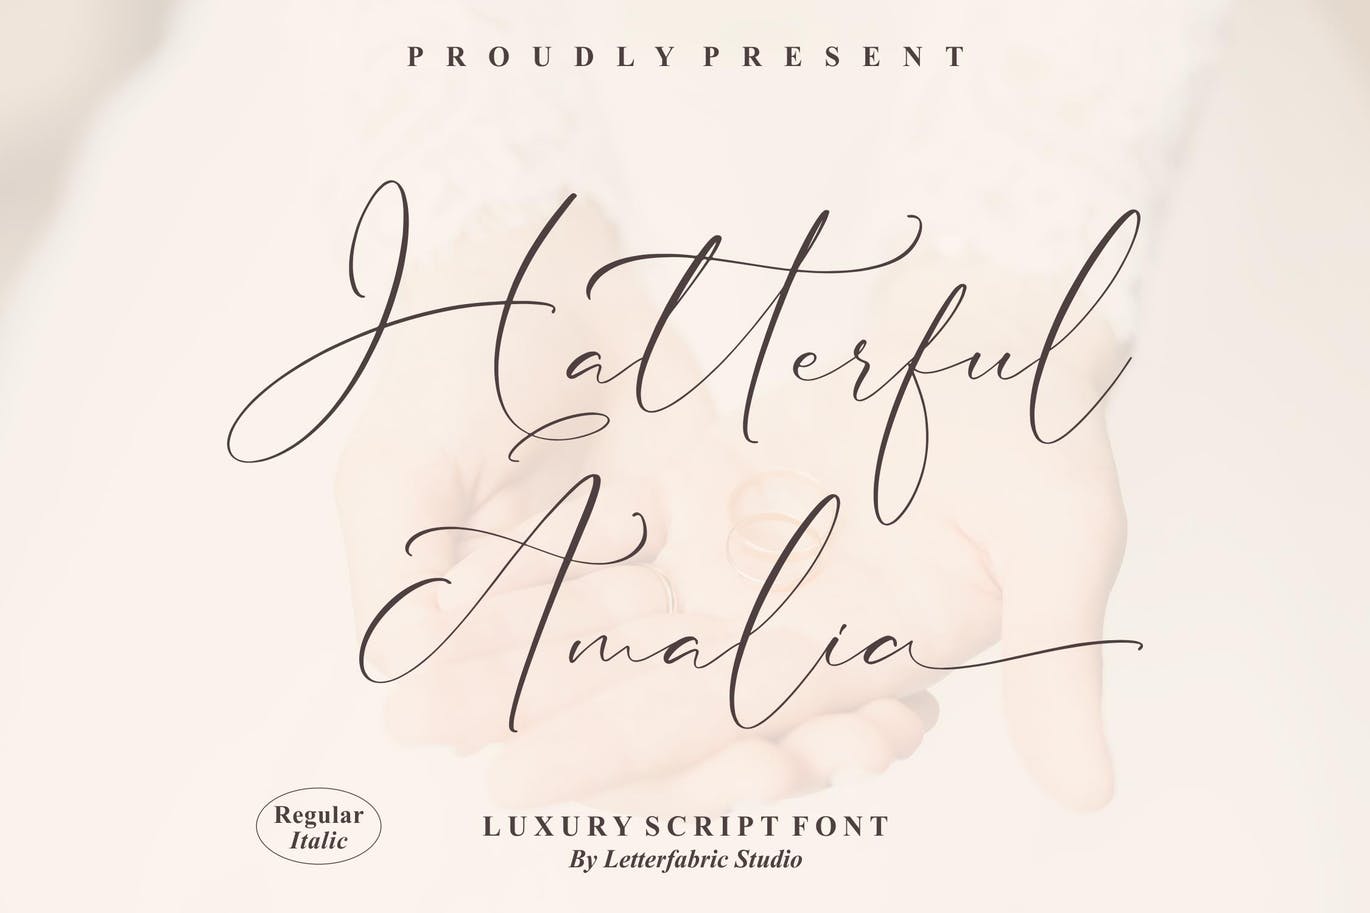 豪华潦草脚本字体 Hatterful Amalia Luxury Script Font 设计素材 第11张